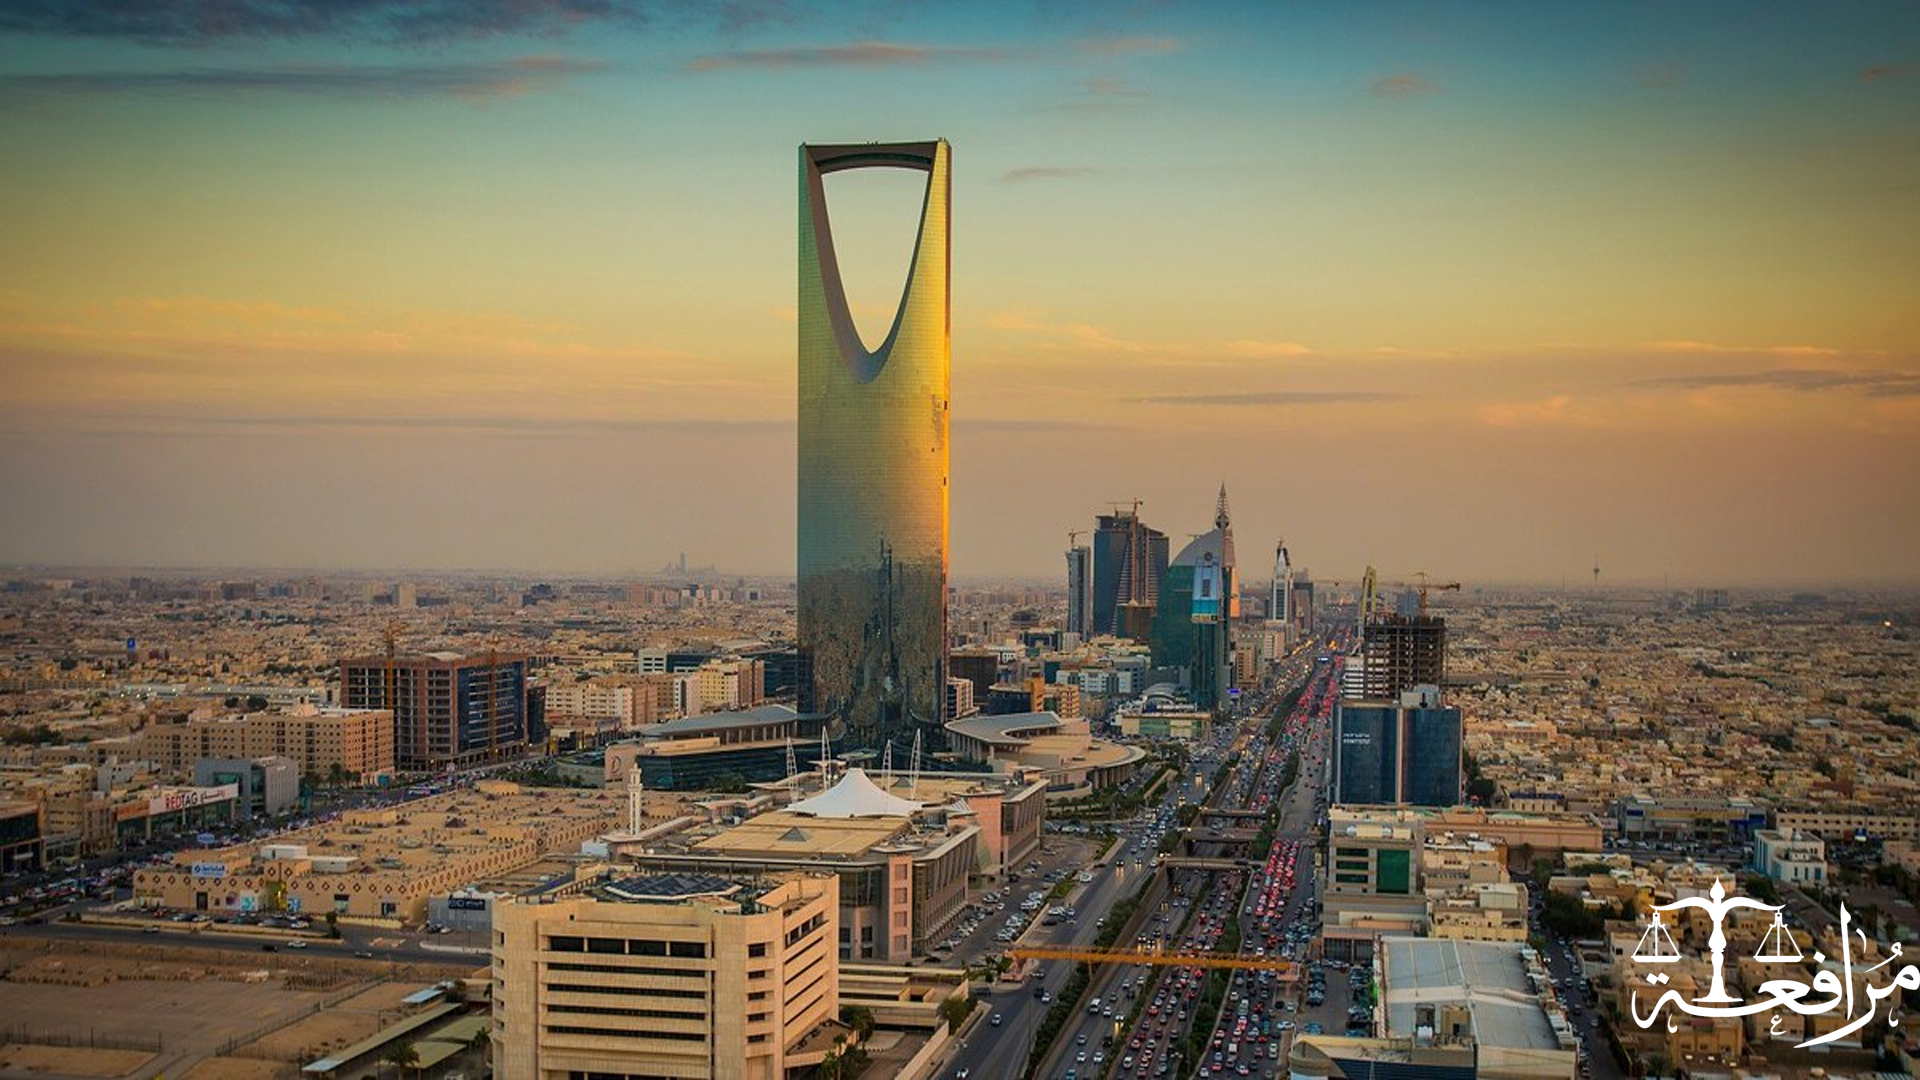 ما هي أنواع الشركات في المملكة العربية السعودية ؟